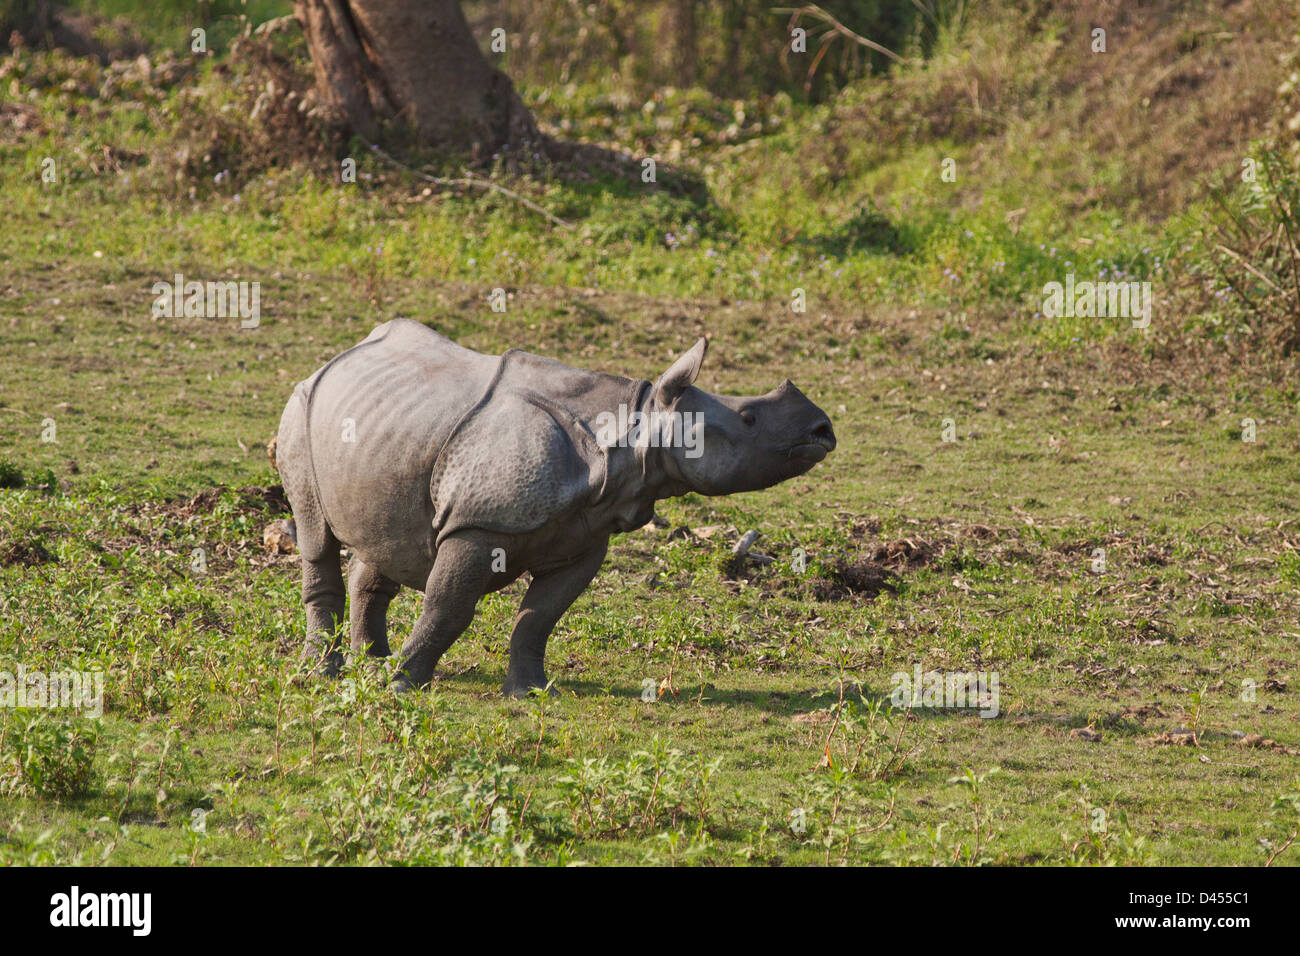 Les jeunes dans les prairies ouvertes rhinocéros, parc national de Kaziranga, Inde Banque D'Images